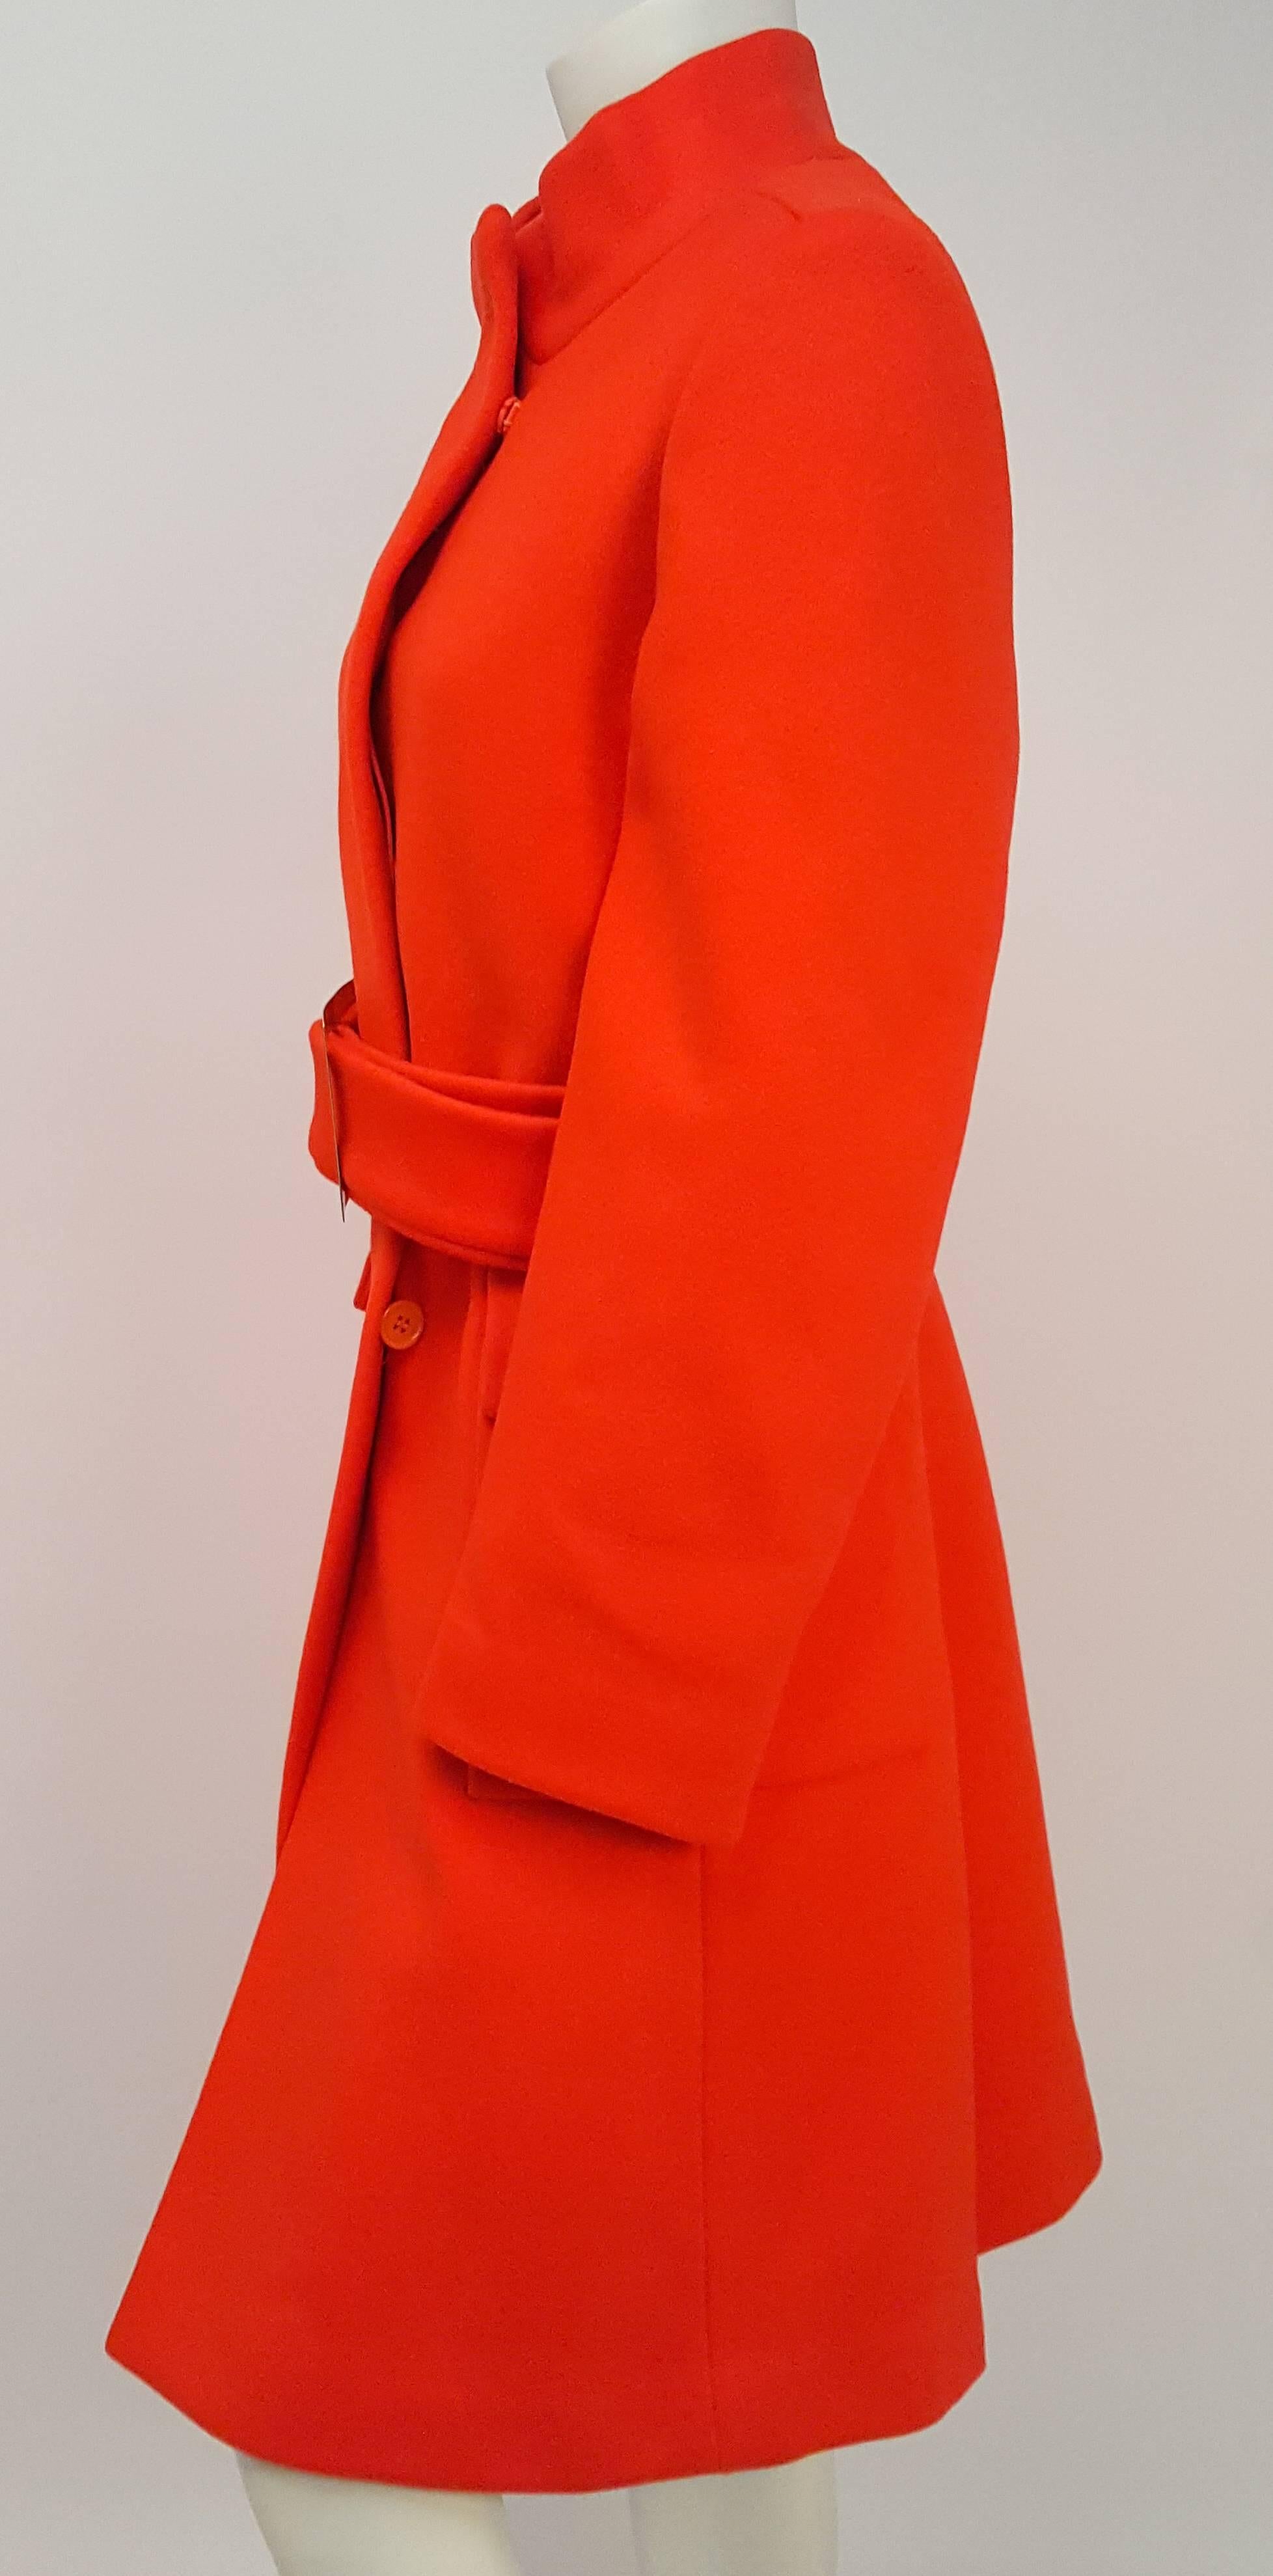 Manteau rouge orange avec ceinture Calvin Klein des années 1970. Bouton caché de la patte de boutonnage et fermeture à pression sur le devant. Poches avant. Entièrement doublé. Aprox US Women's size 6-8.